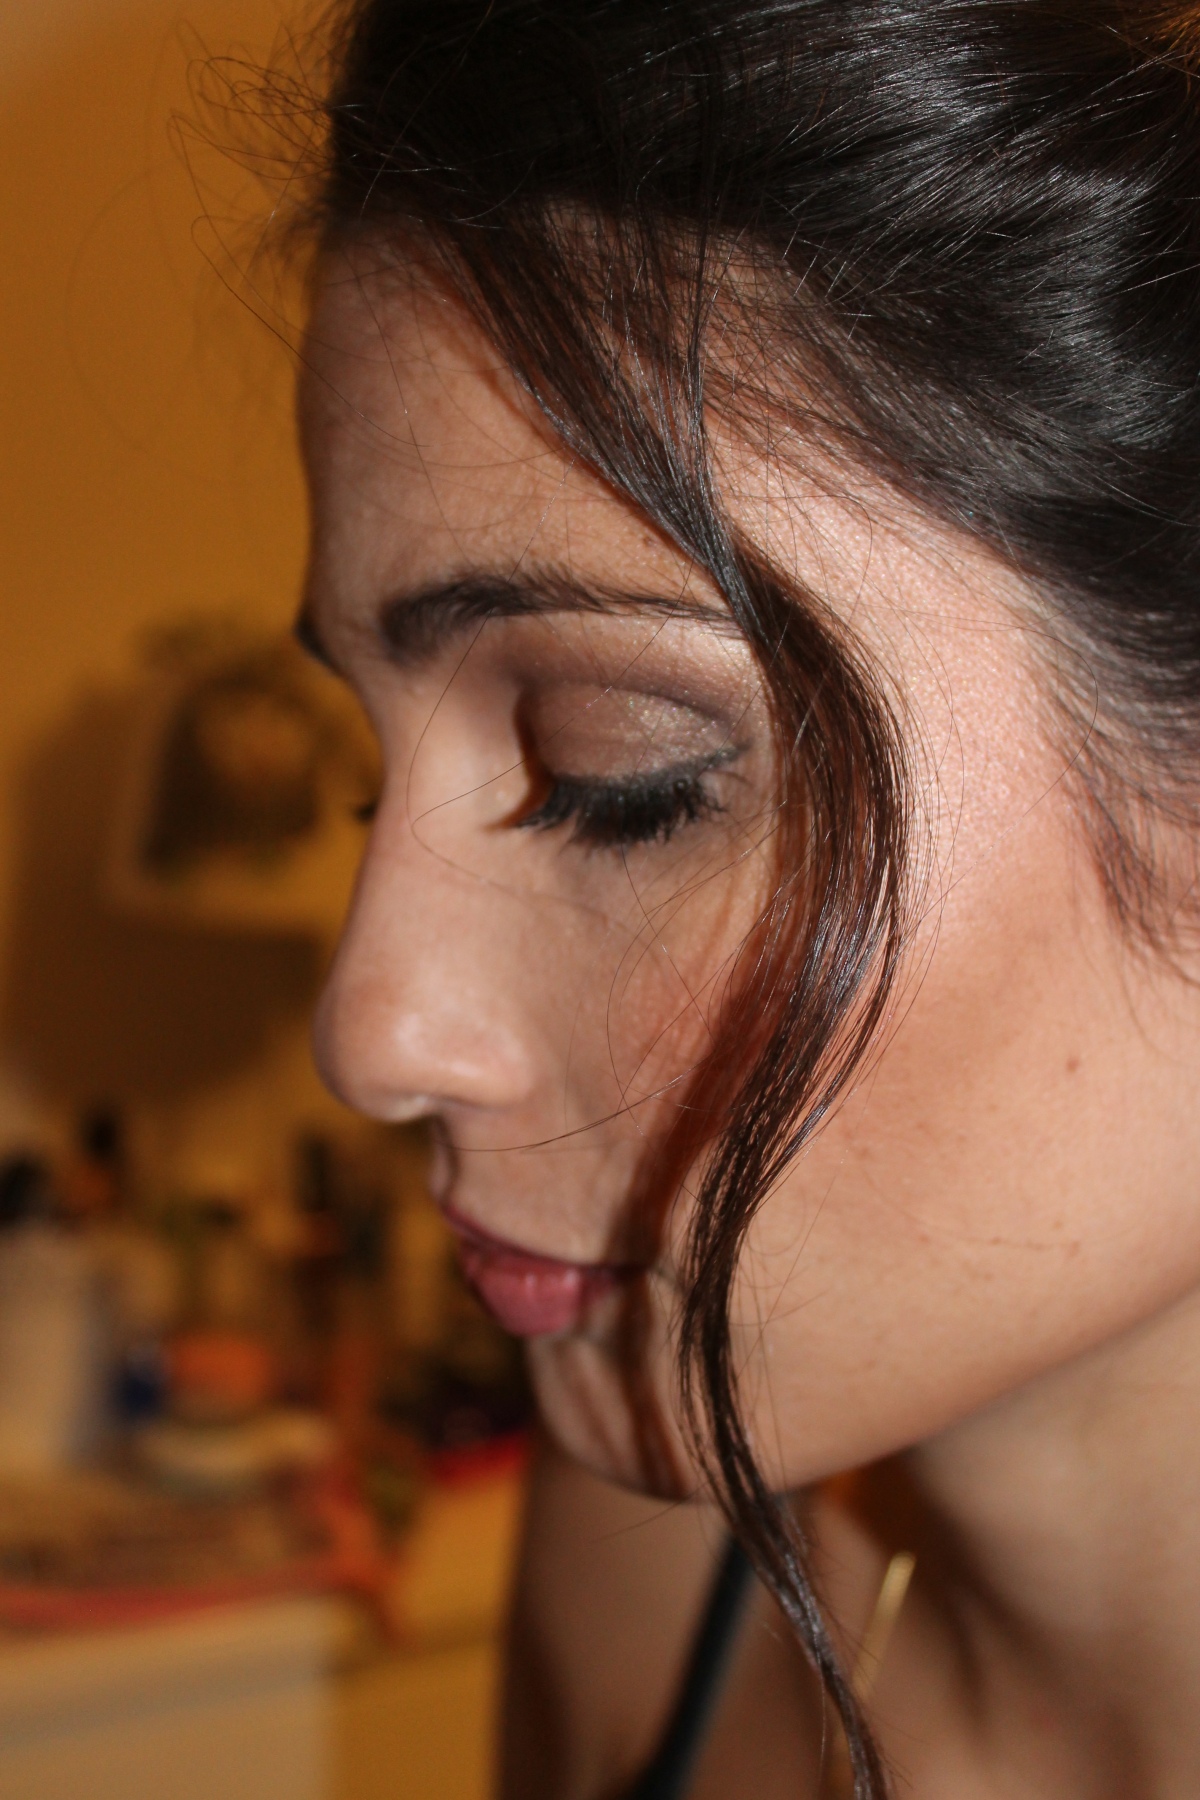 Sara Lima Makeup Artist - Oeiras - Cabelo e Maquilhagem para Eventos